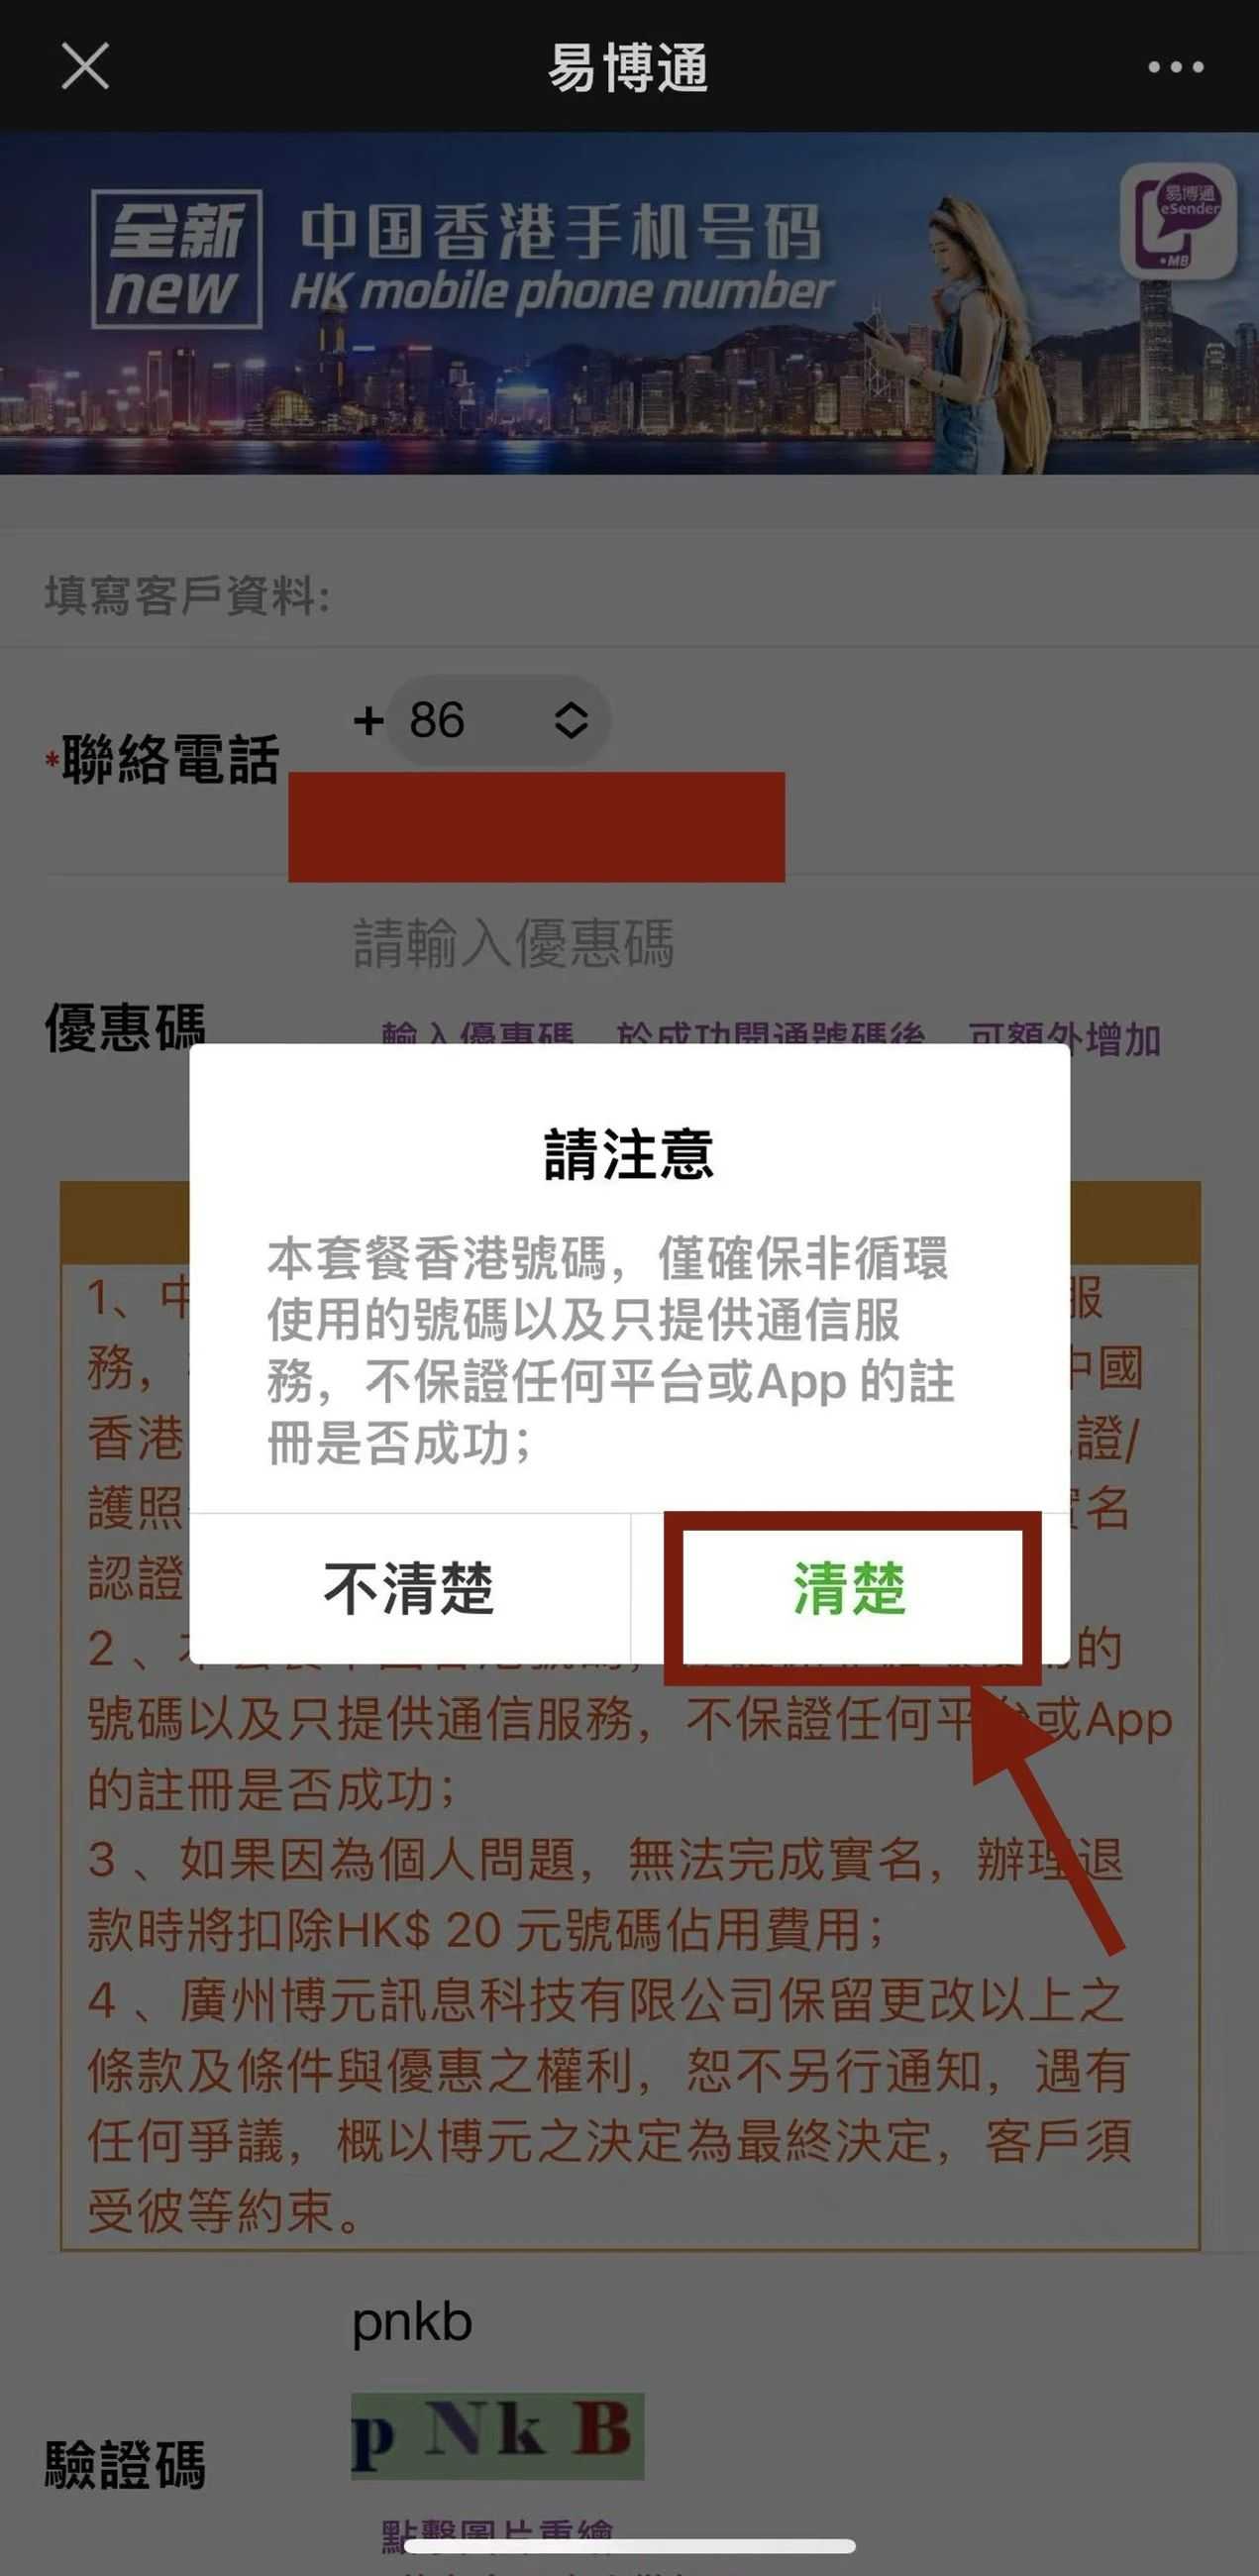 Анхаарна уу: Энэхүү Хонг Конгийн дугаарын багц нь зөвхөн дахин ашиглах боломжгүй дугаарыг баталгаажуулдаг бөгөөд зөвхөн харилцаа холбооны үйлчилгээ үзүүлдэг. Энэ нь аливаа платформ эсвэл APP дээр амжилттай бүртгүүлэх баталгаа болохгүй; Зураг 9